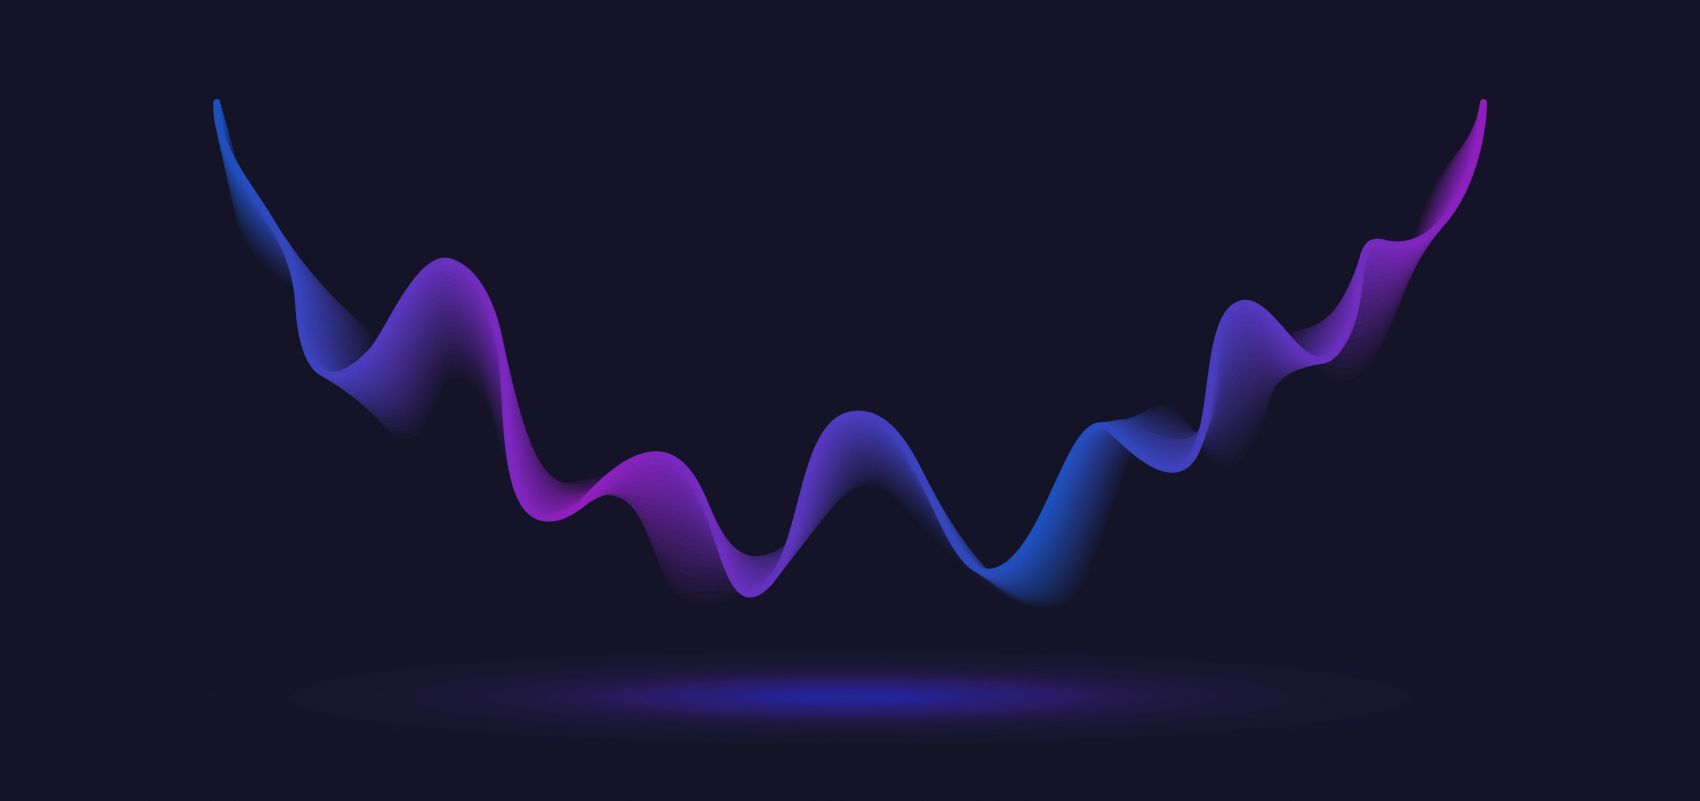 紫蓝色波浪线图形素材下载图片